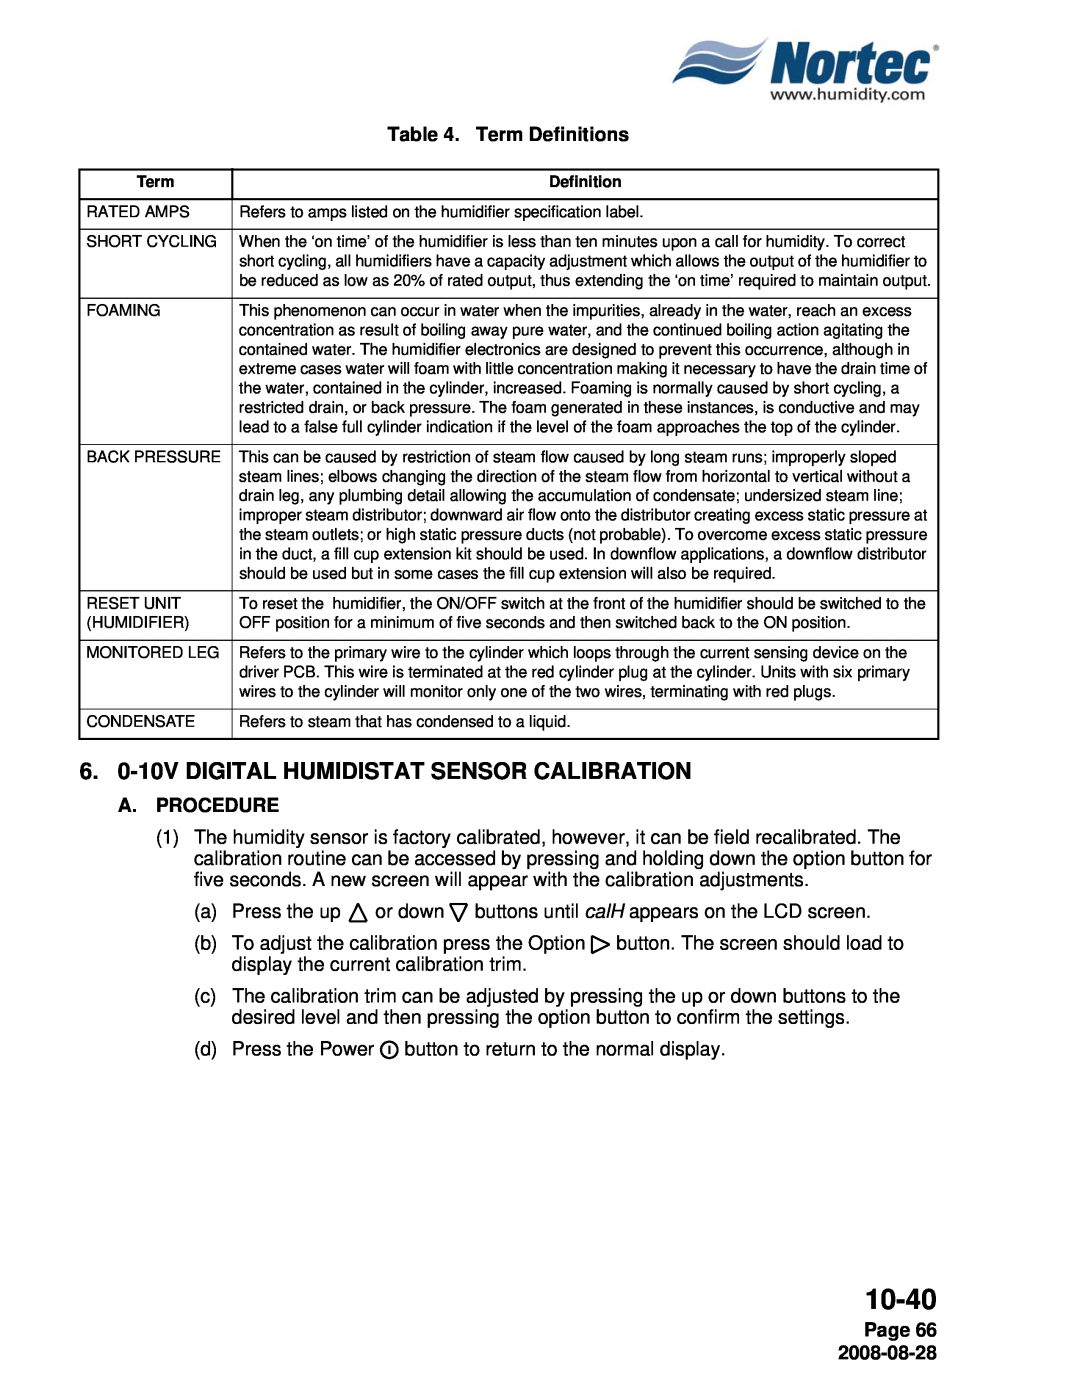 Nortec NH Series 6.0-10VDIGITAL HUMIDISTAT SENSOR CALIBRATION, Term Definitions, Page 66, 10-40, A.Procedure 